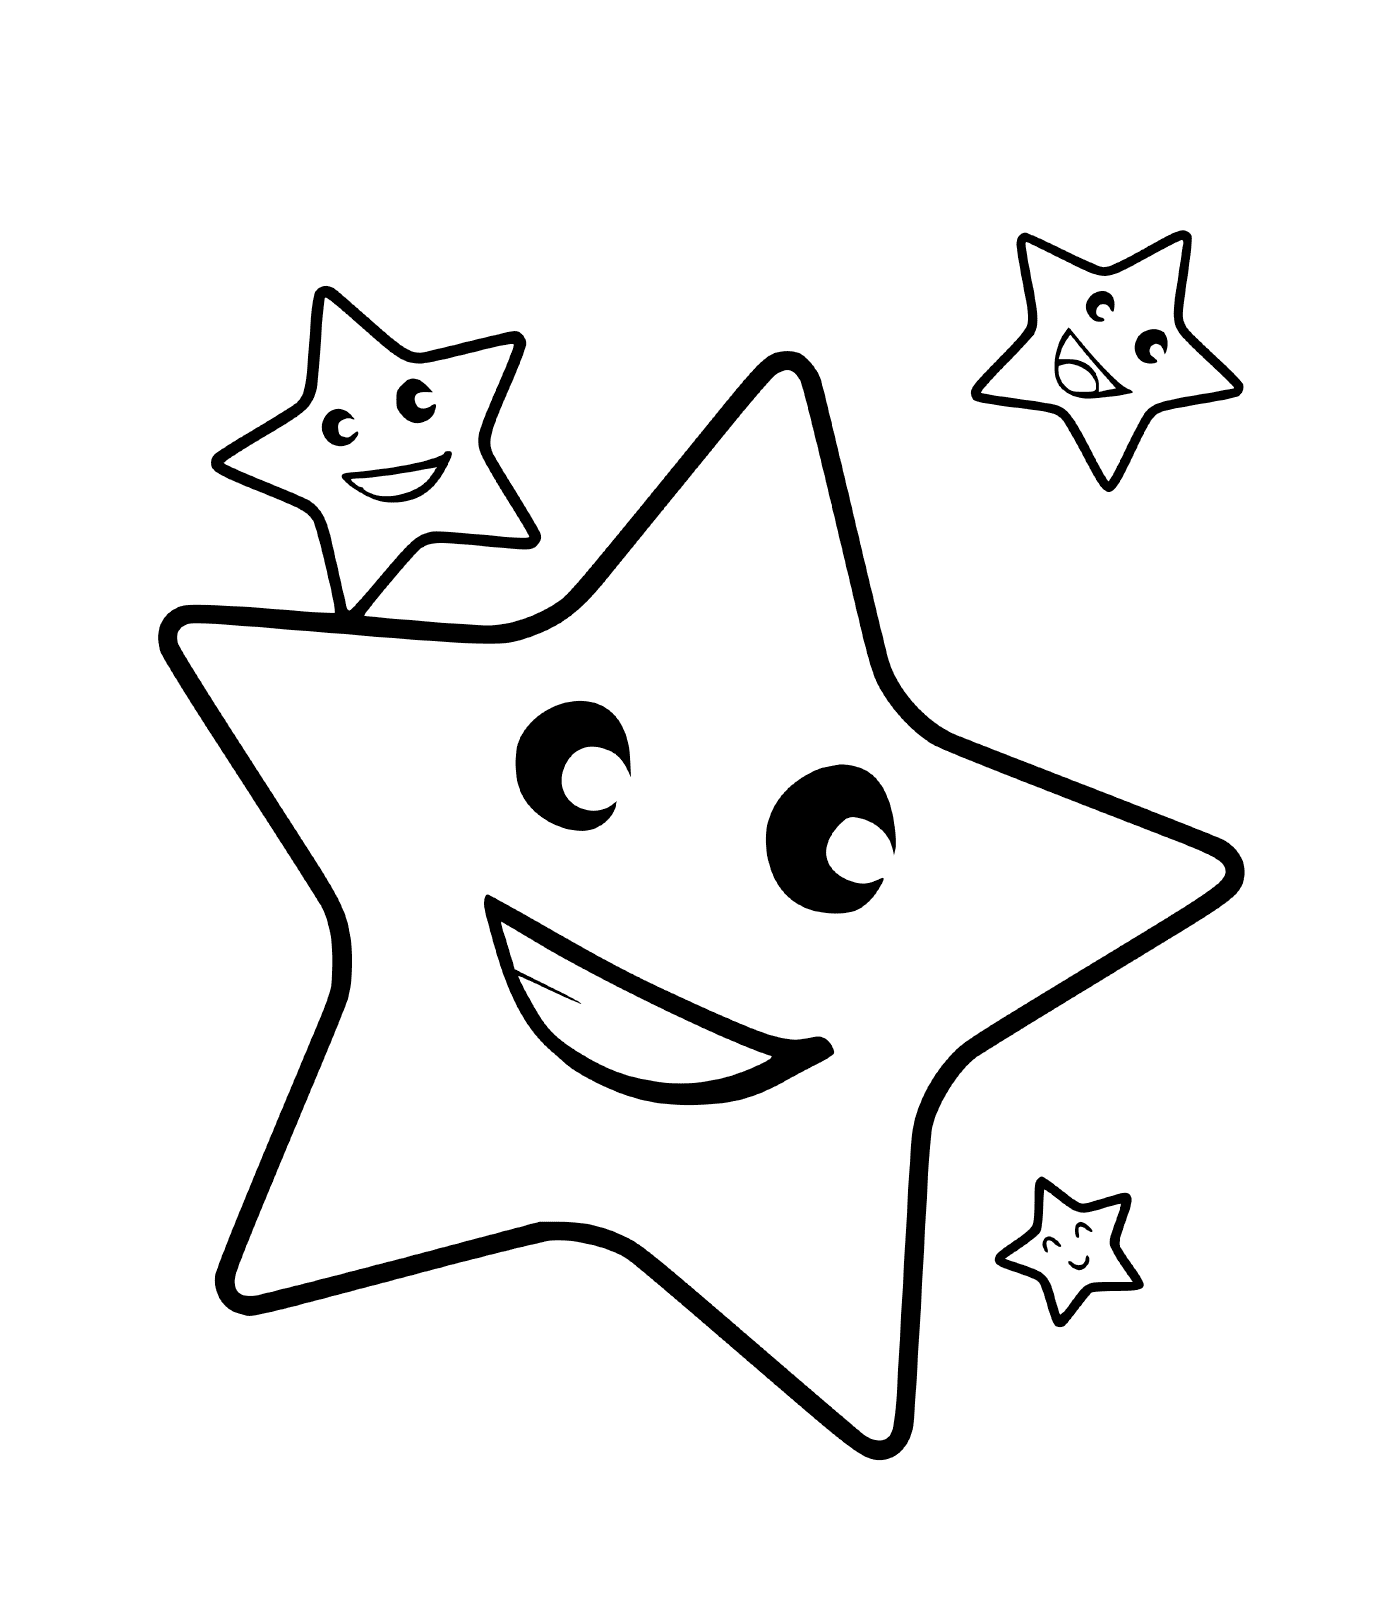  Uma estrela com três rostos sorridentes 